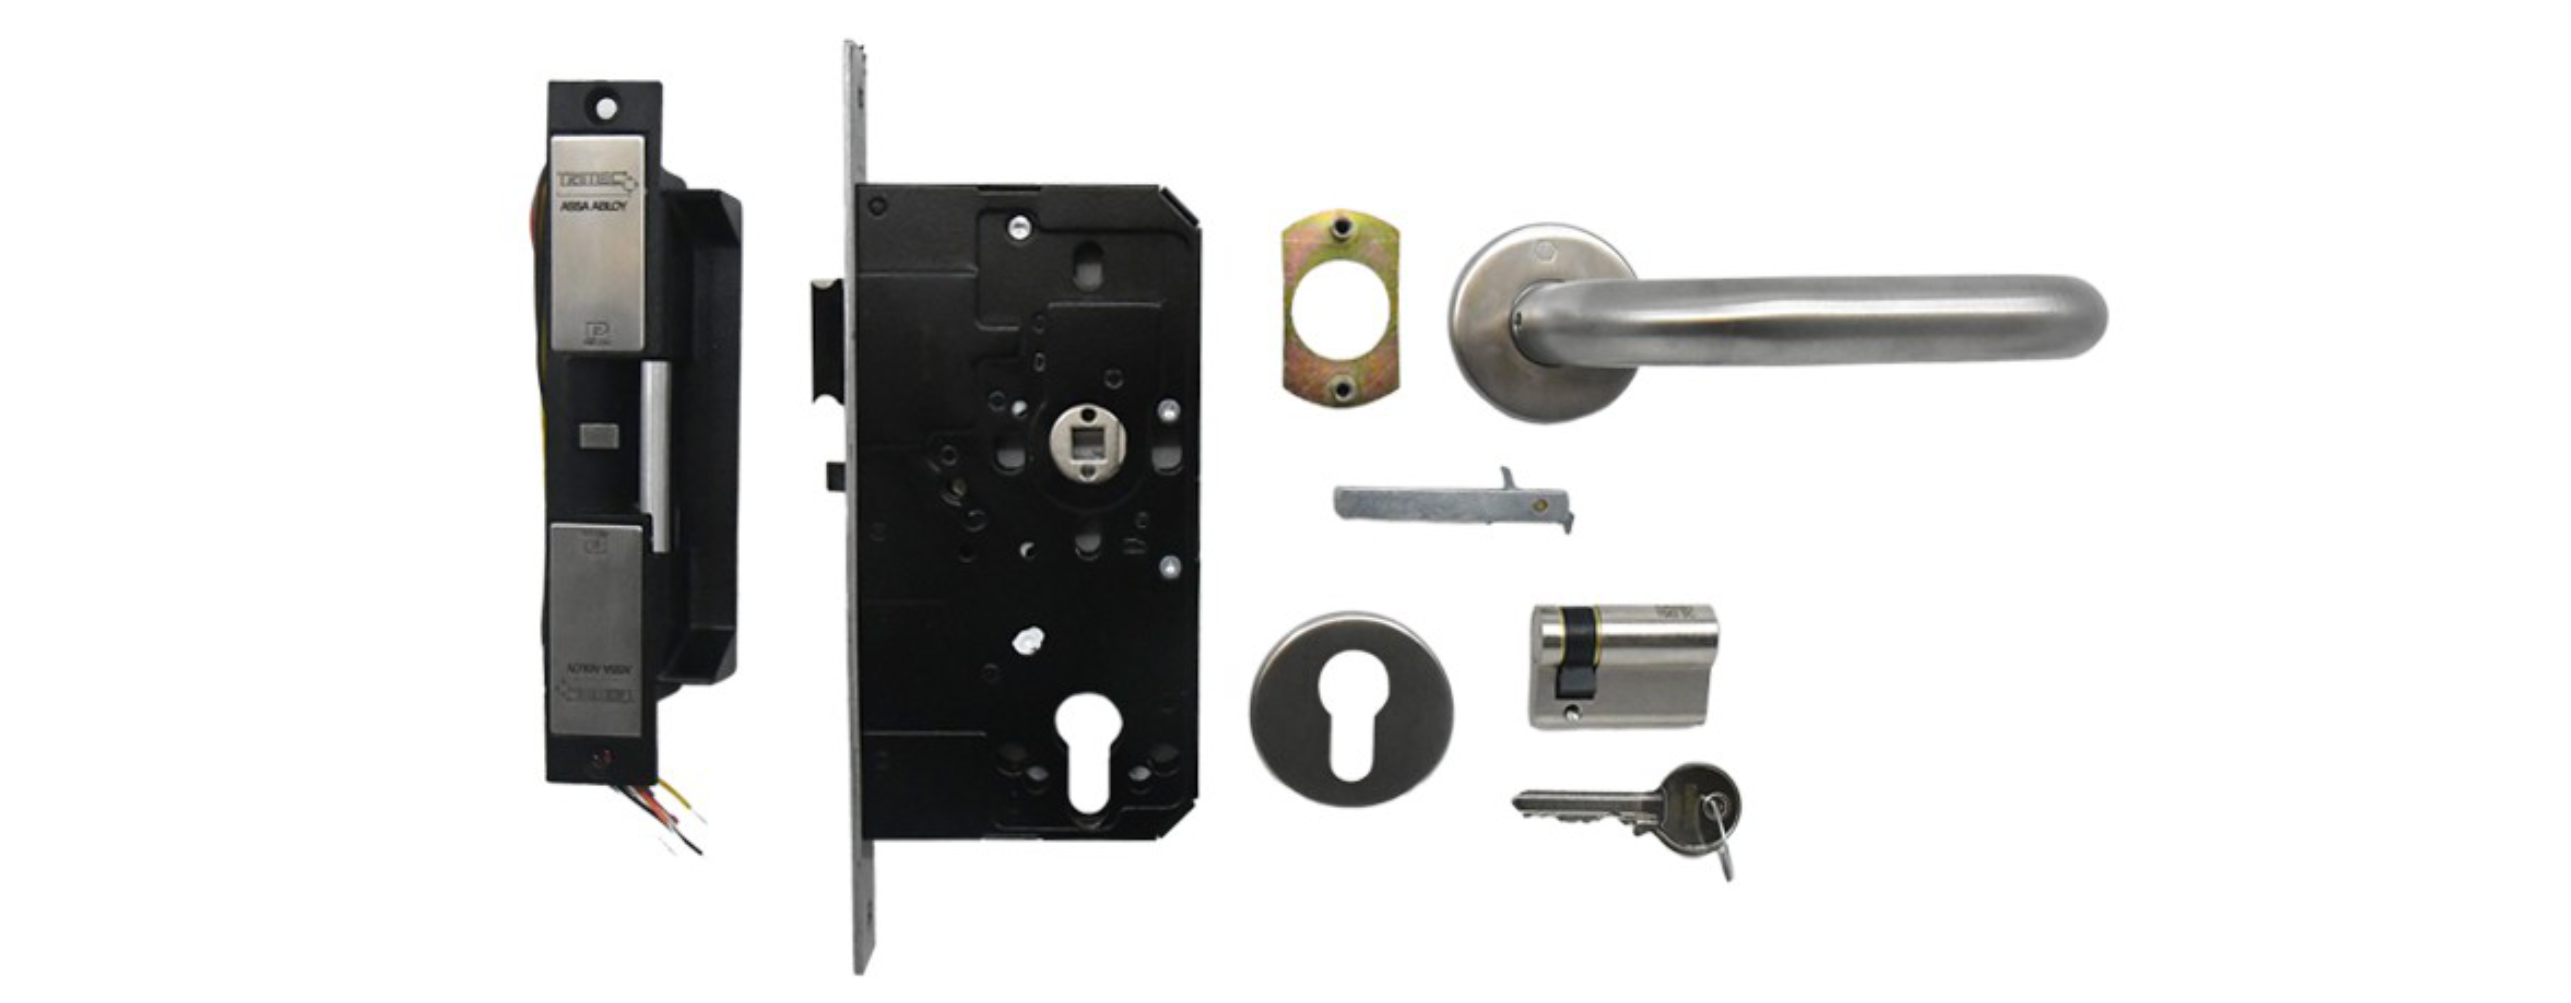 Electric strike door hardware ironmongery kit for fire doors